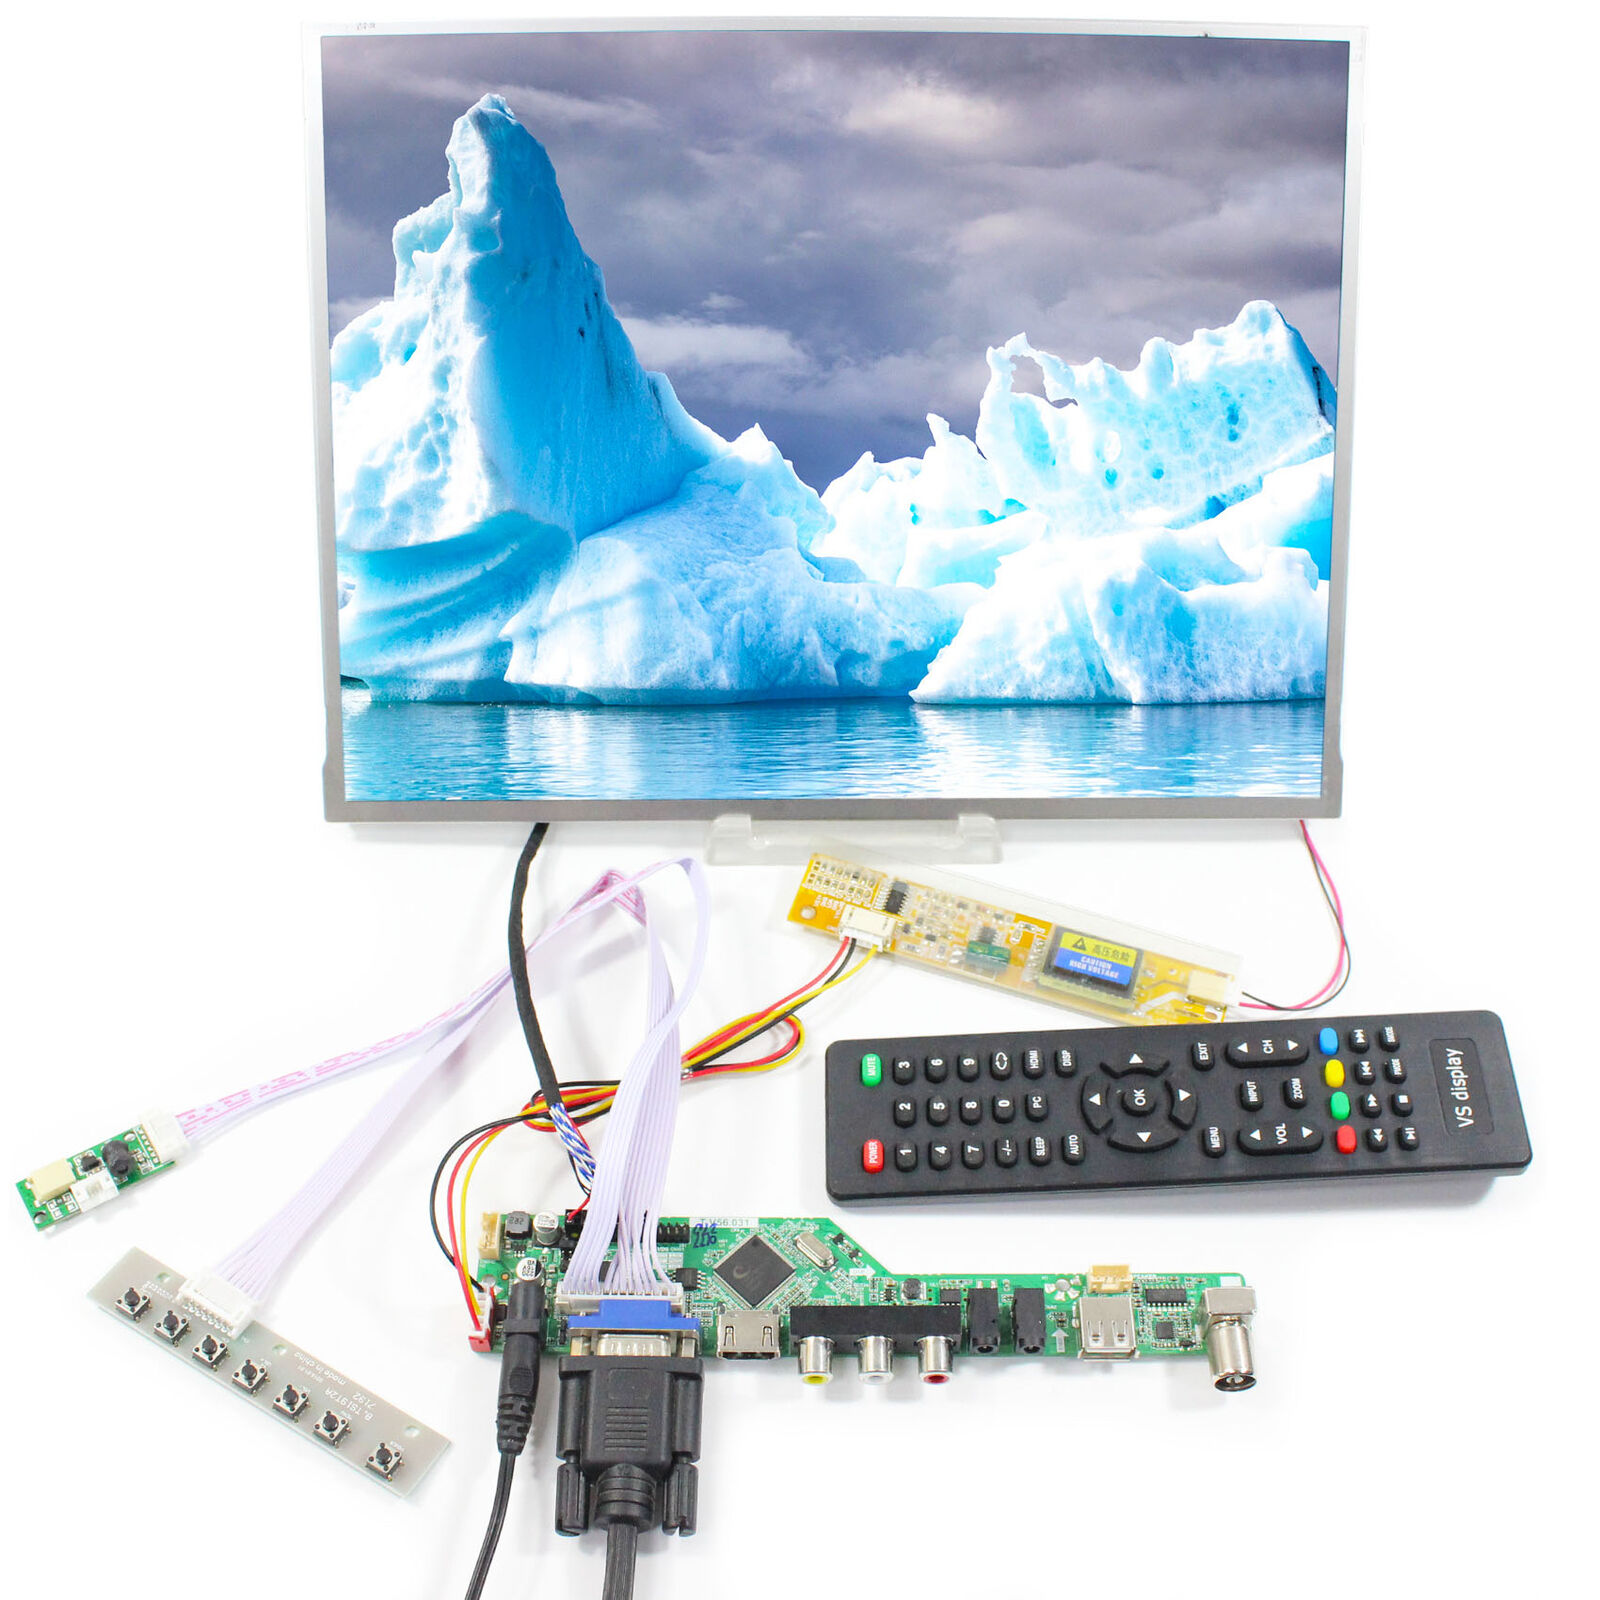 HDMI VGA USB   TV Board T.V56.03 with 13.3inch TM133XG 1024X768 LCD Screen